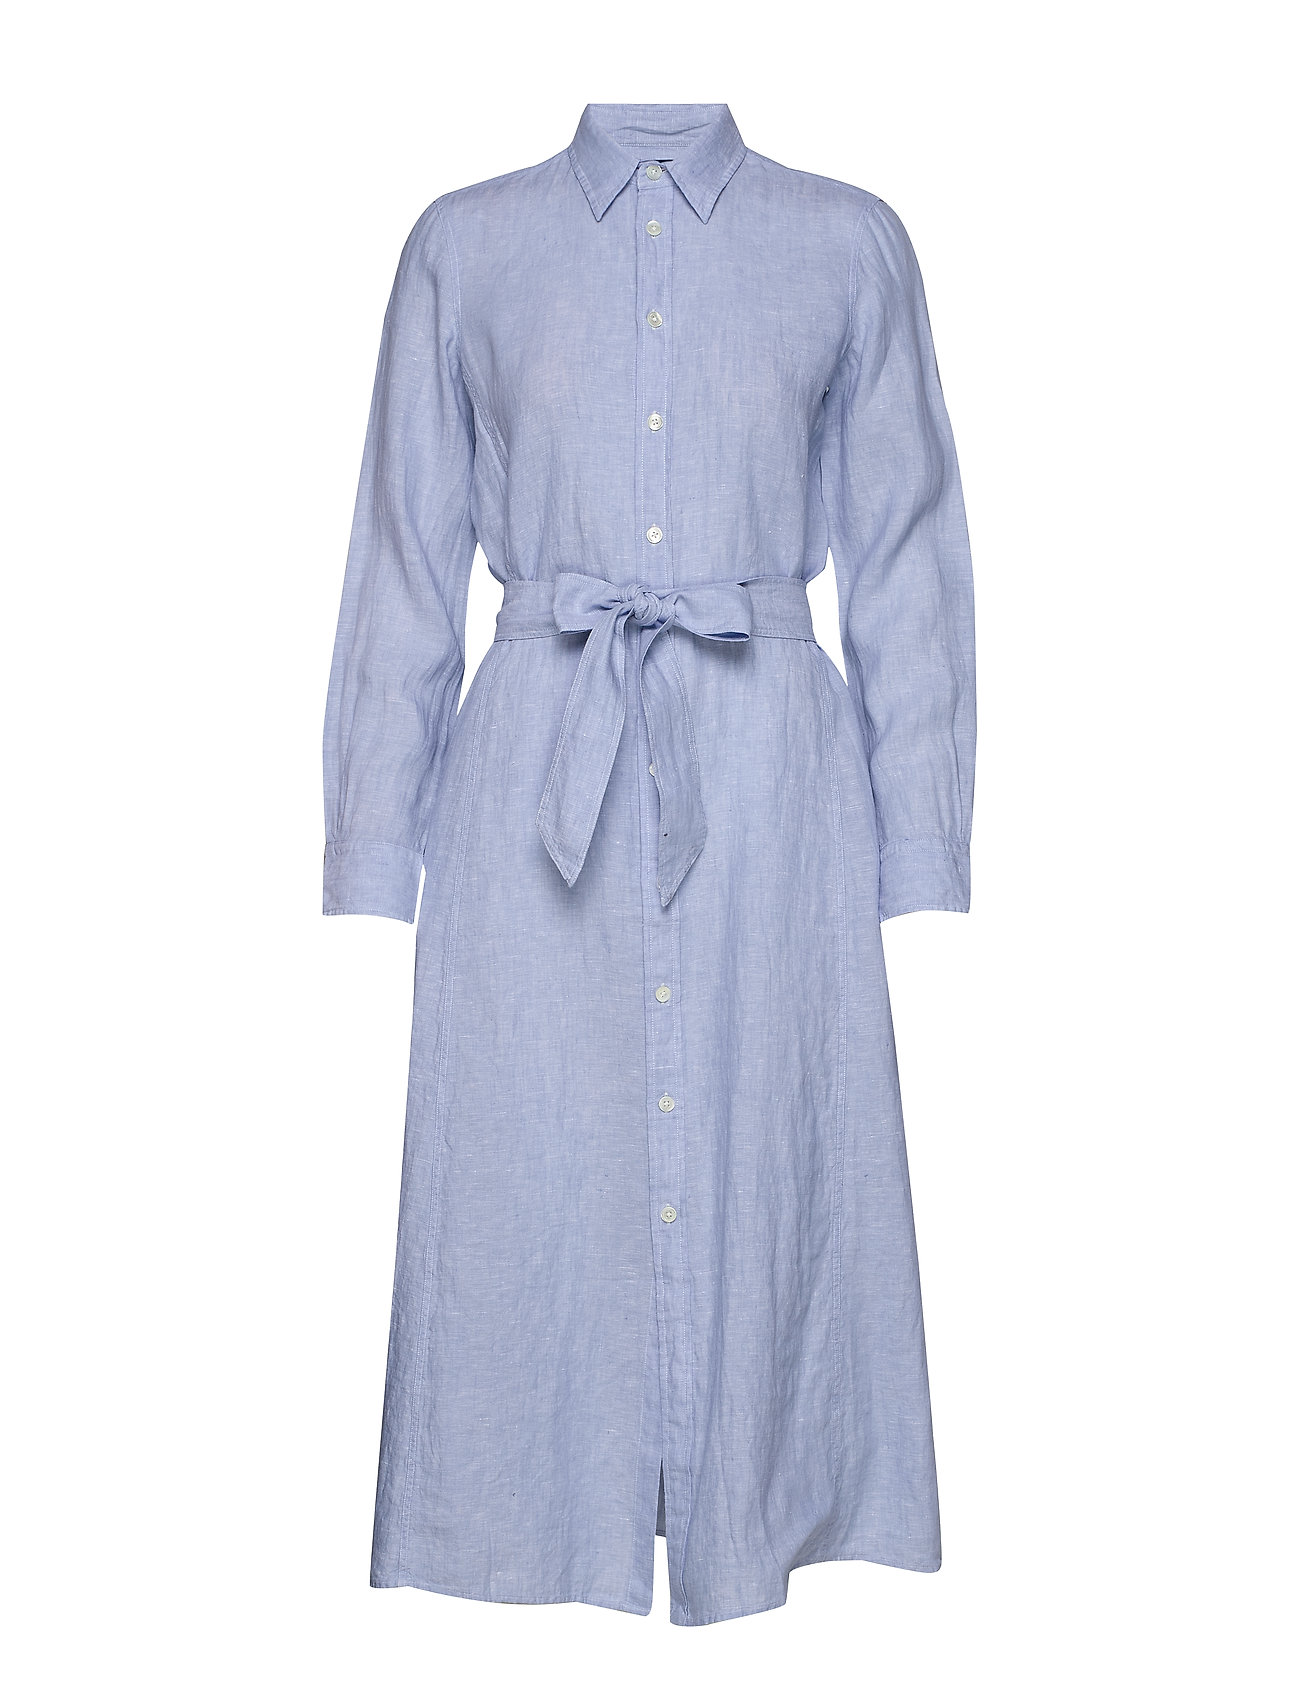 ralph lauren linen shirt dress